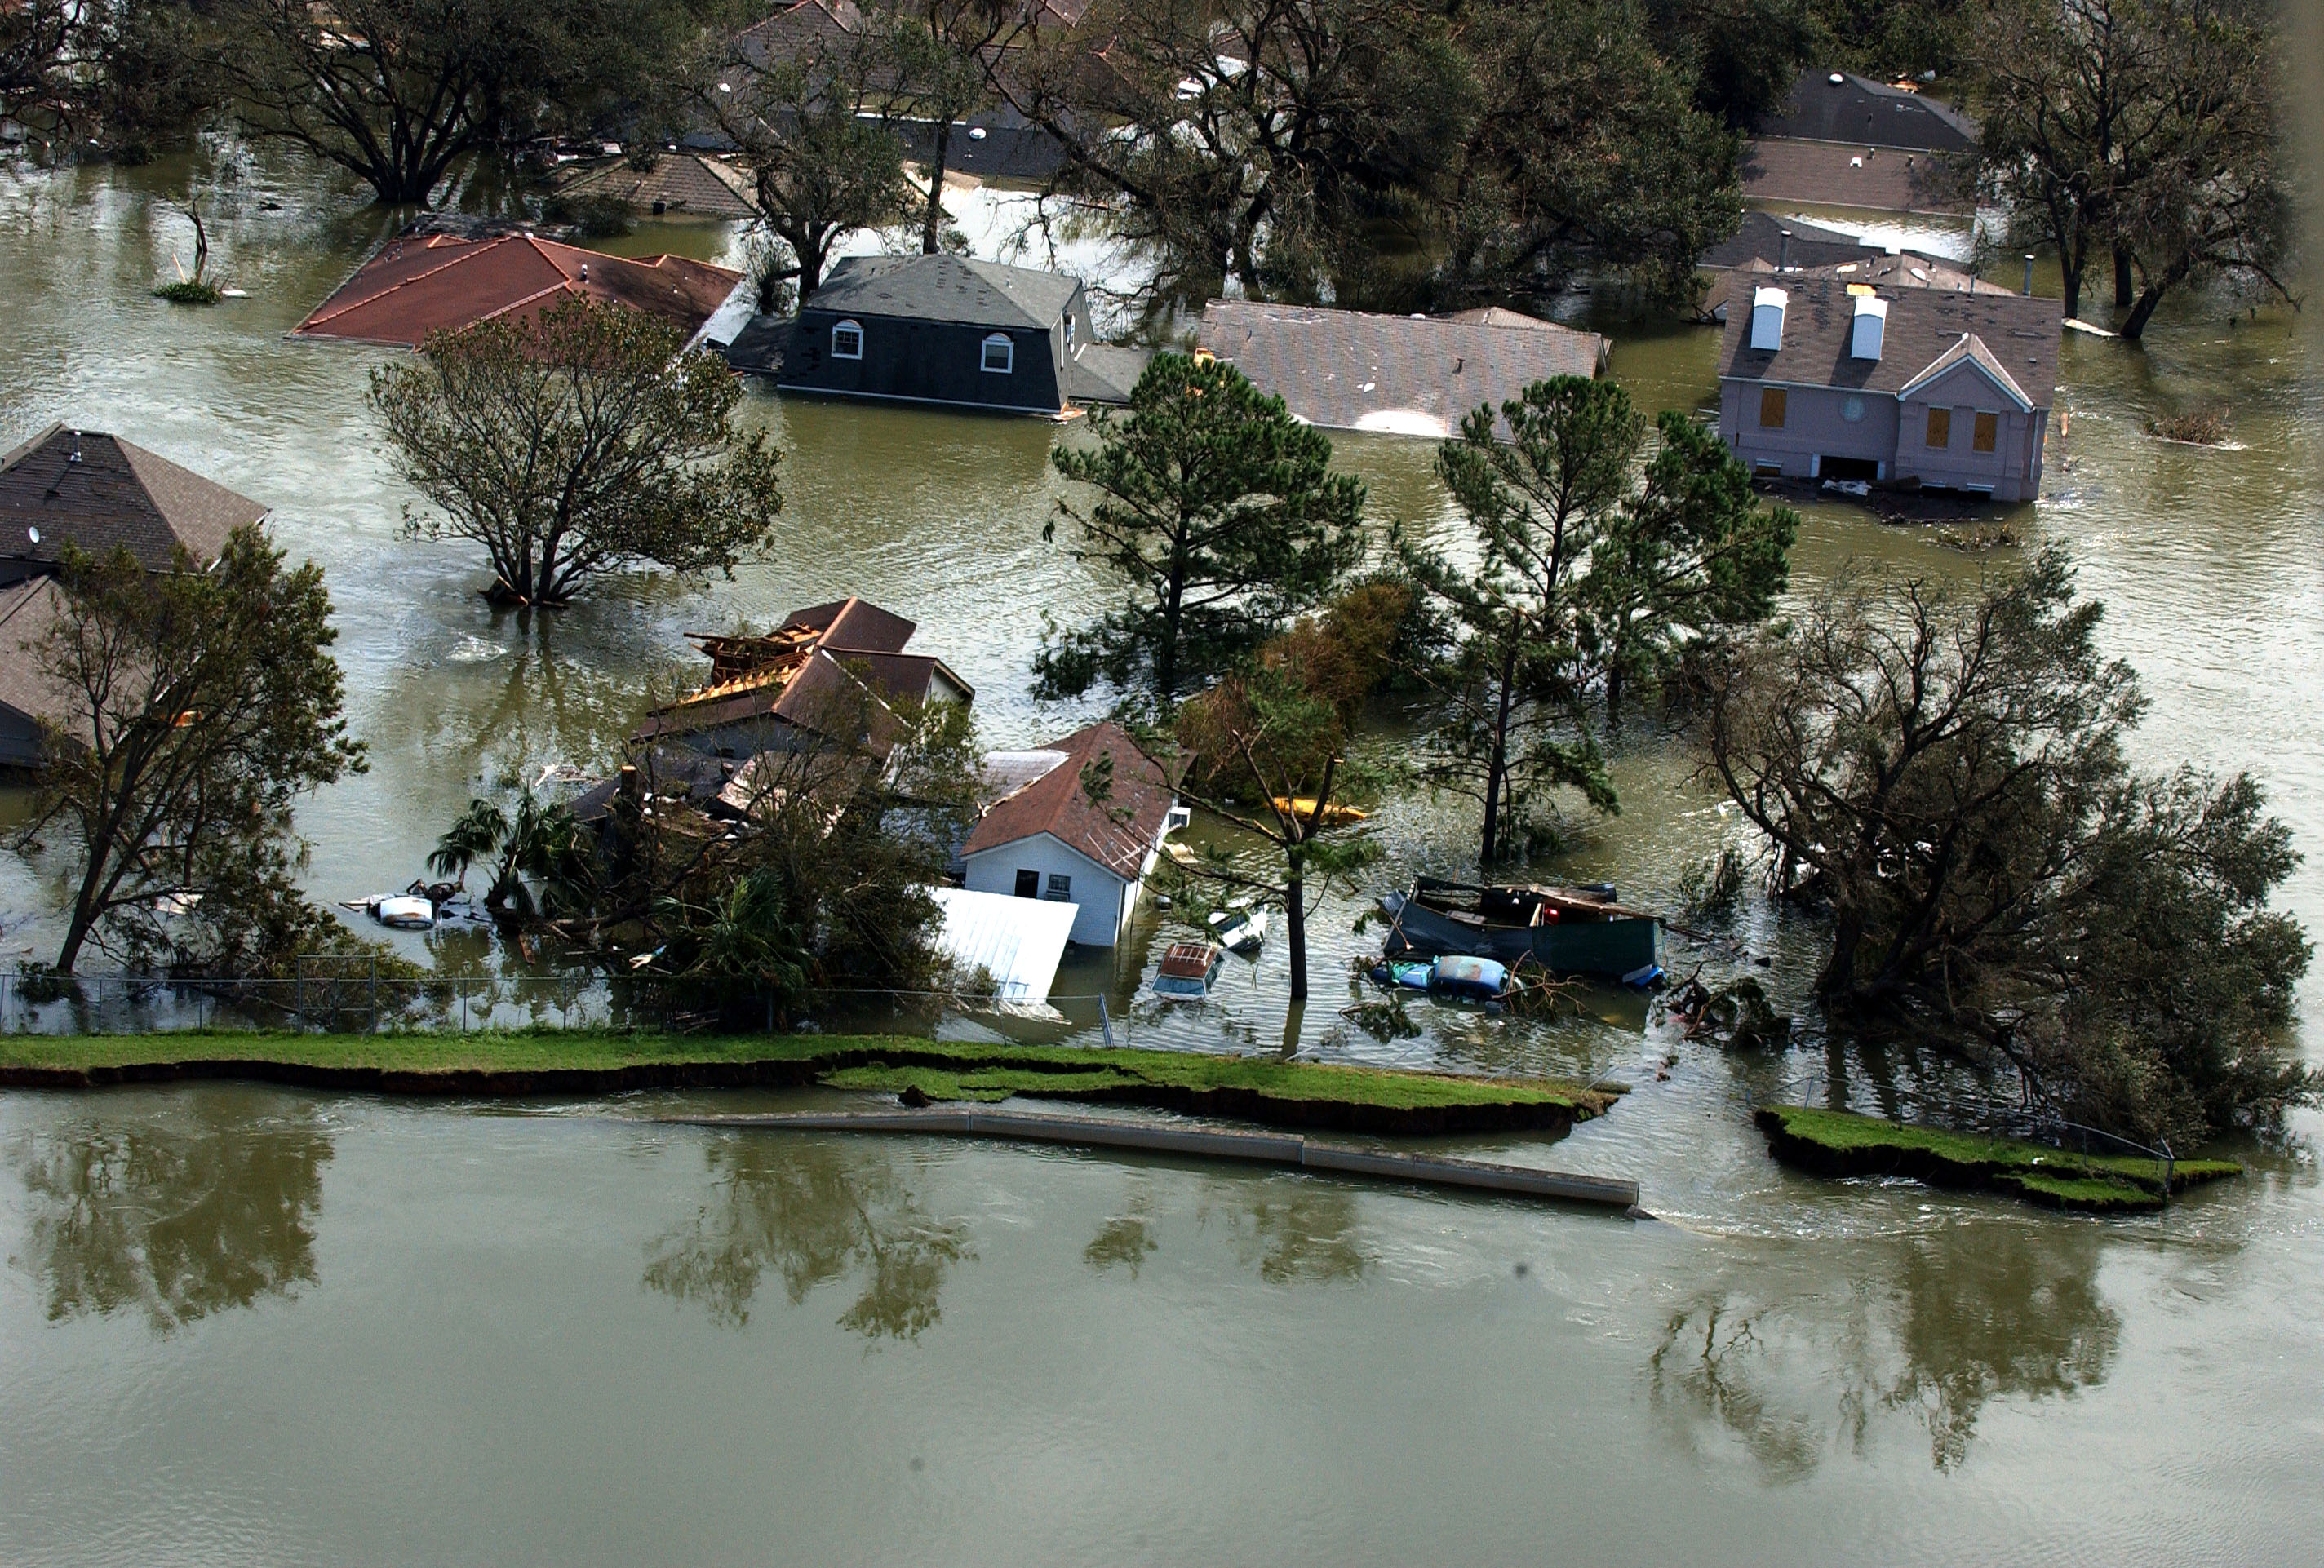 FEMA - 14964 - Photograph by Jocelyn Augustino taken on 08-30-2005 in Louisiana